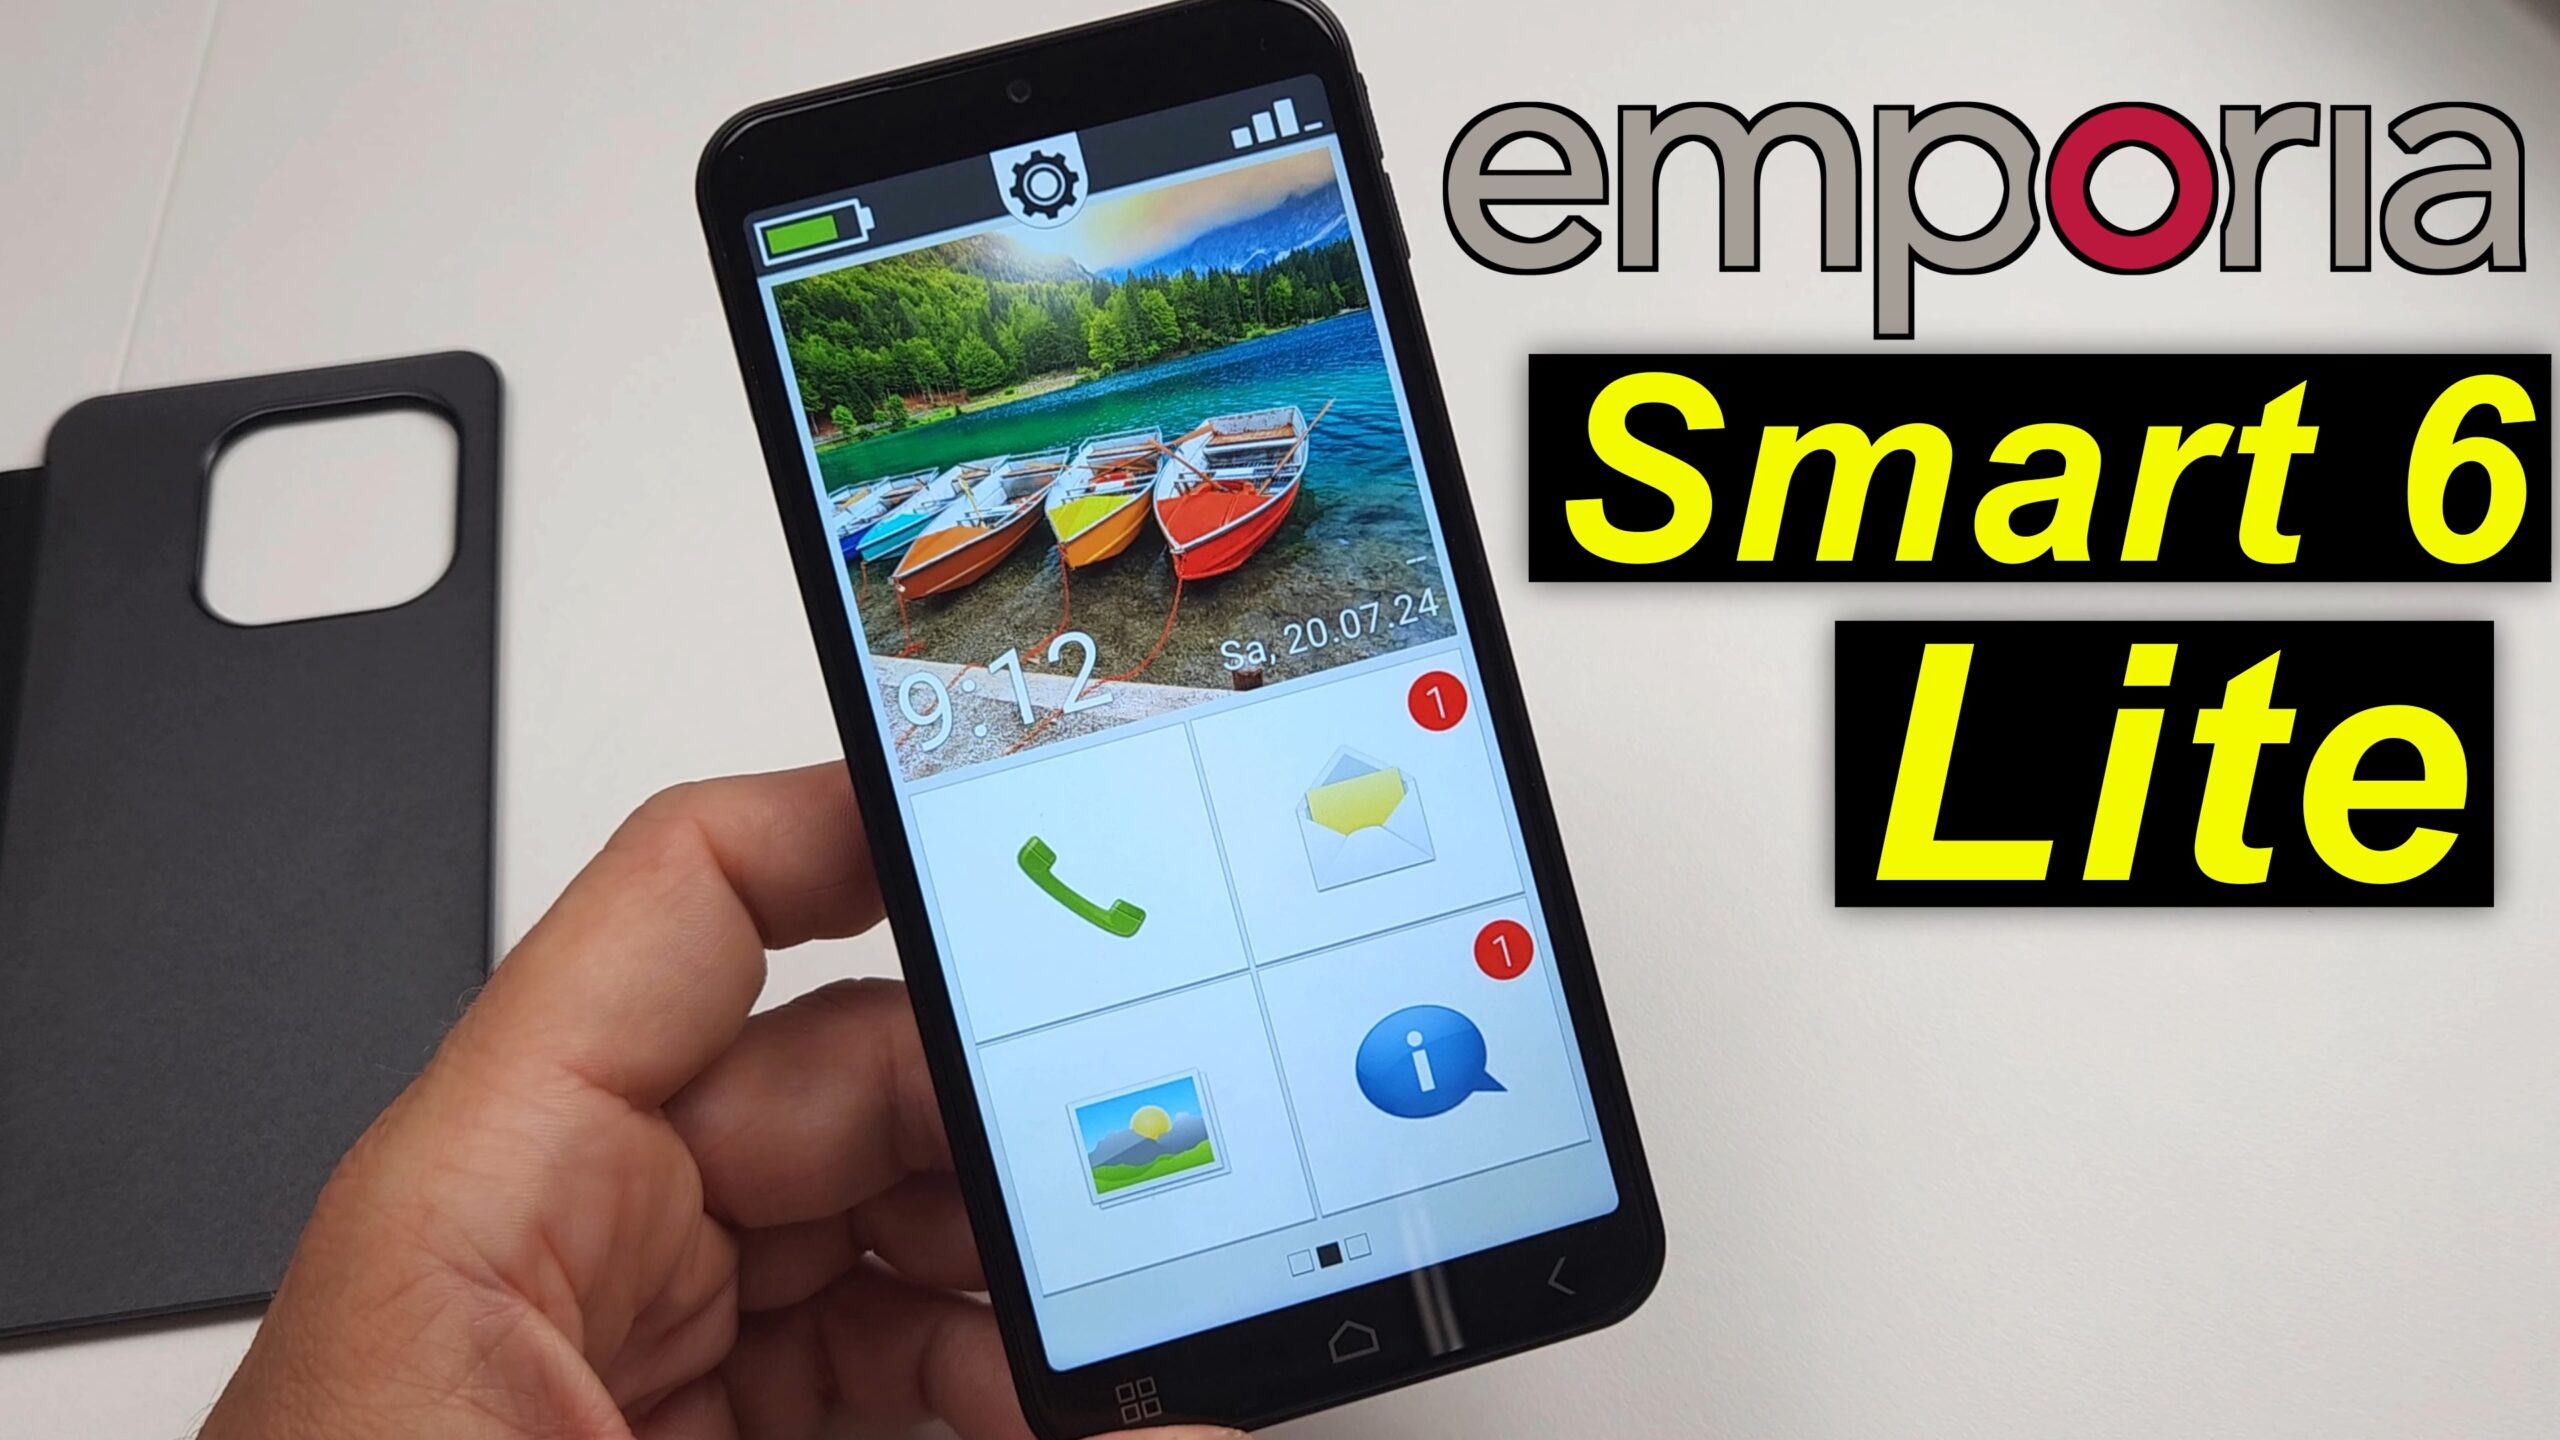 Emporia Smart 6 Lite - Auspacken und Ersteindruck